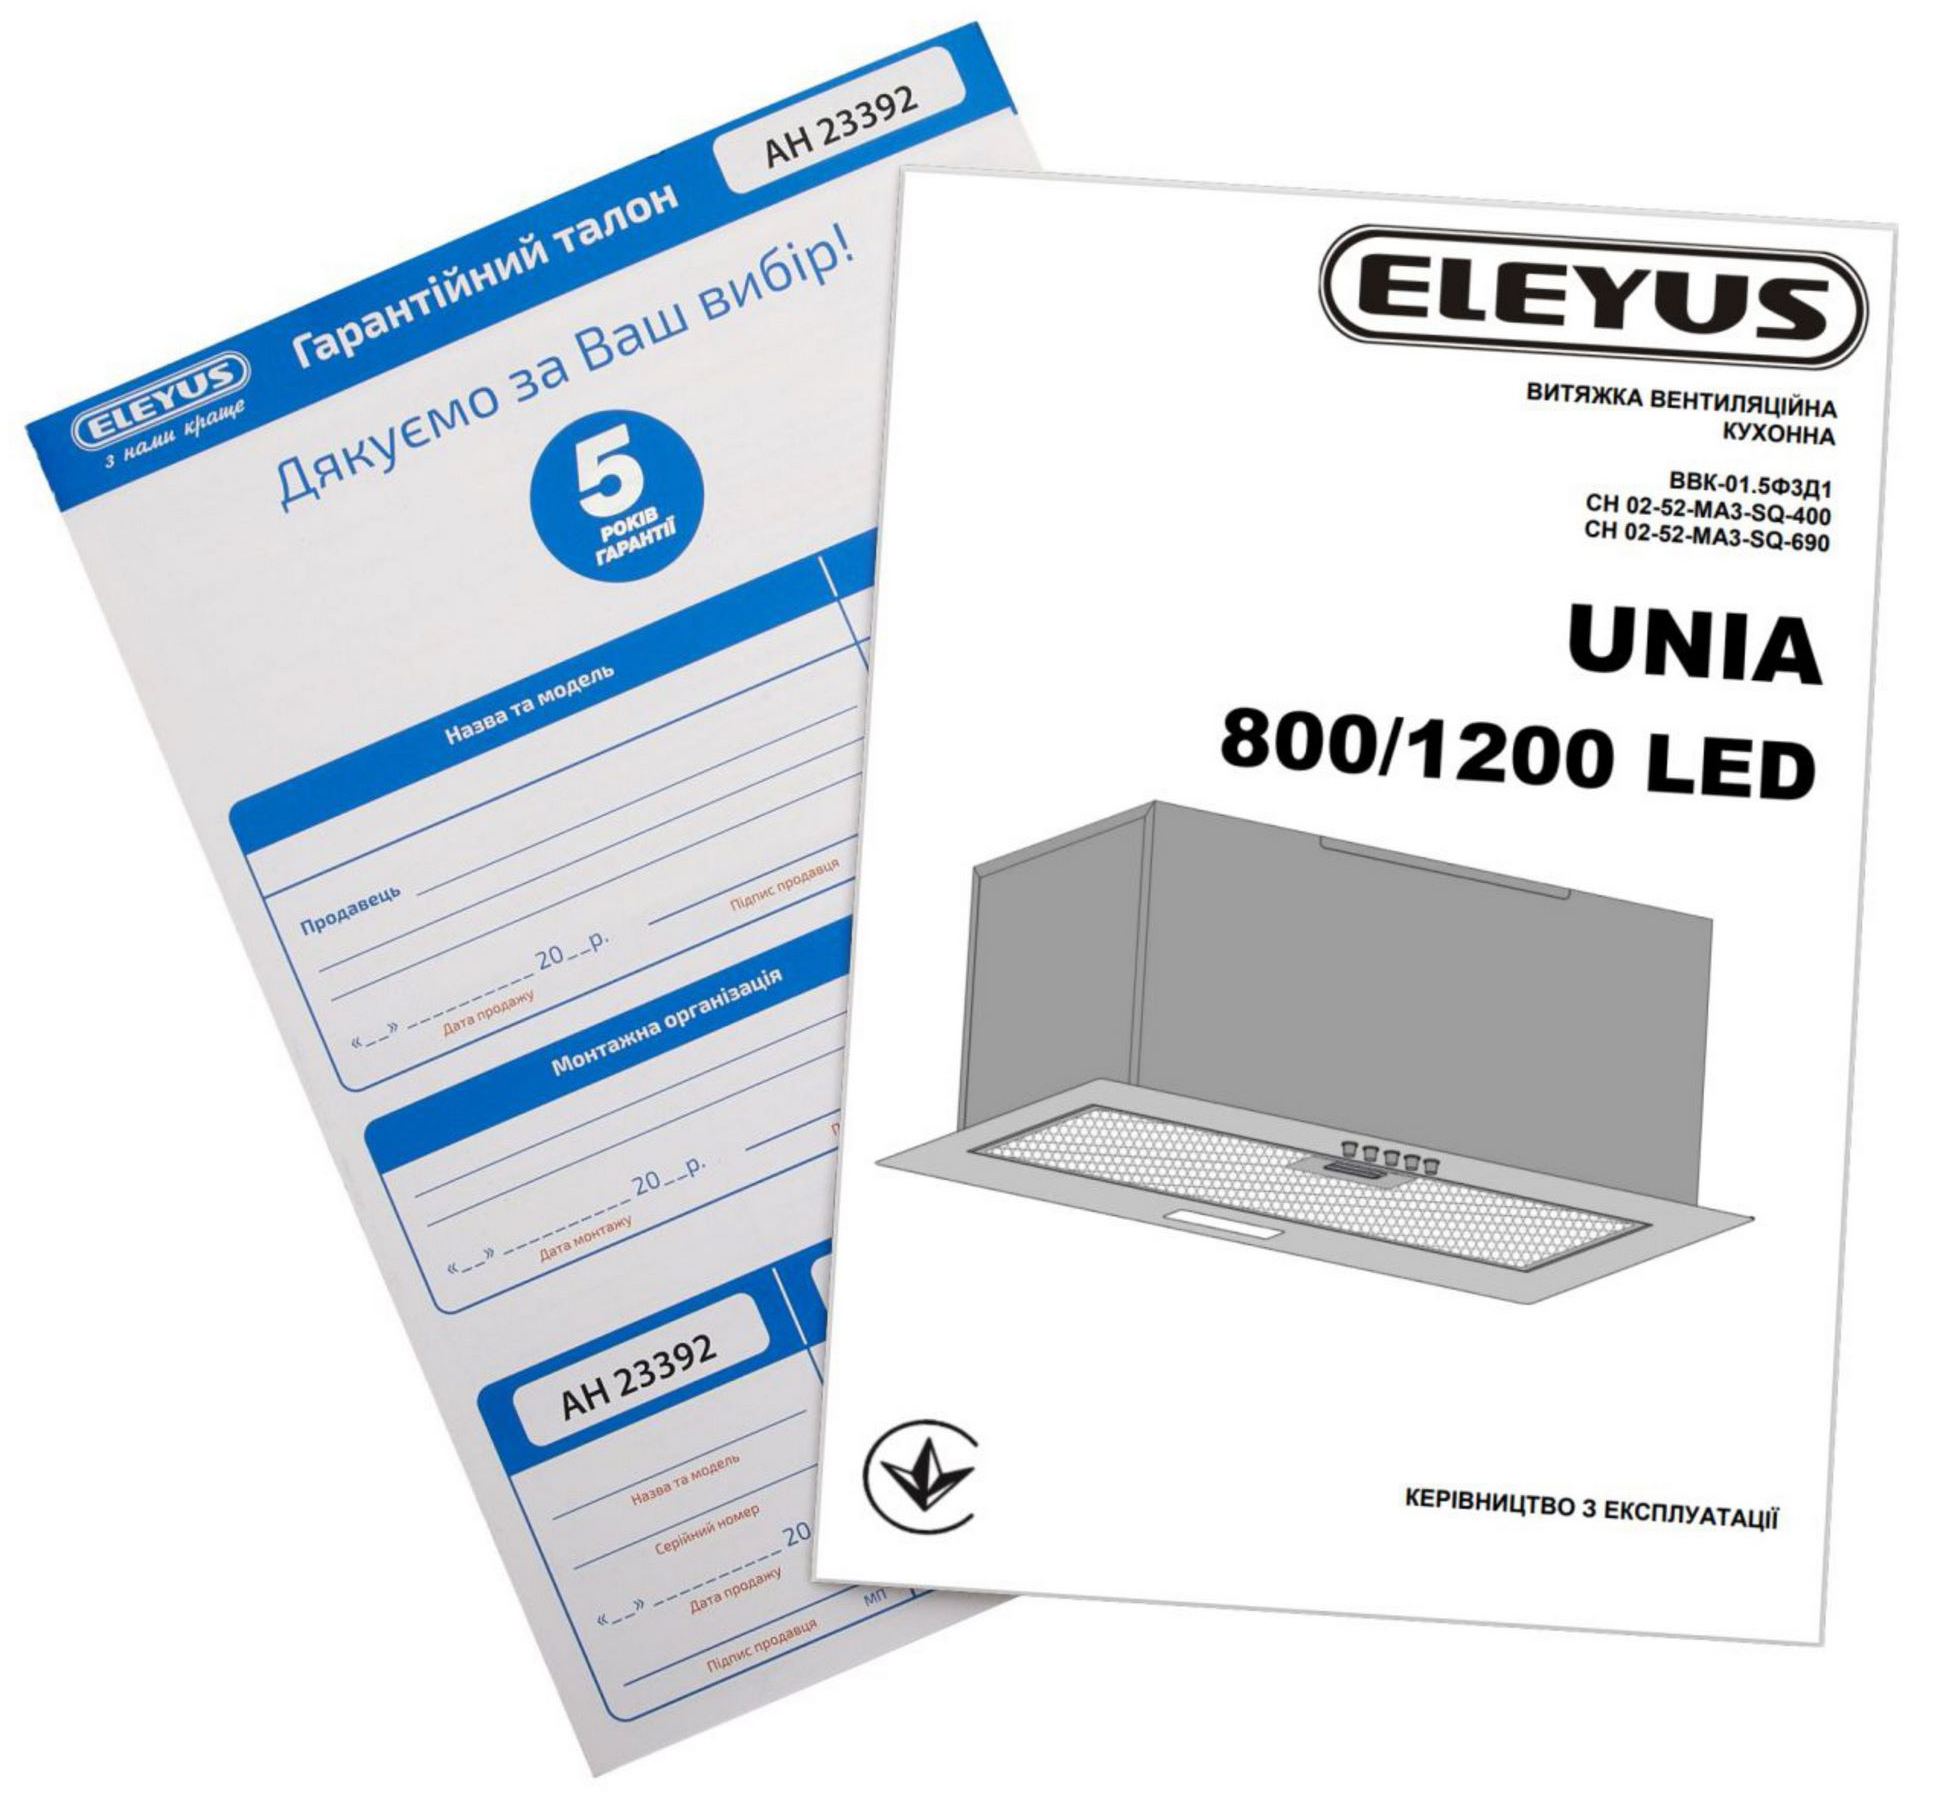 Eleyus Unia 1200 LED 52 BL в магазине в Киеве - фото 10